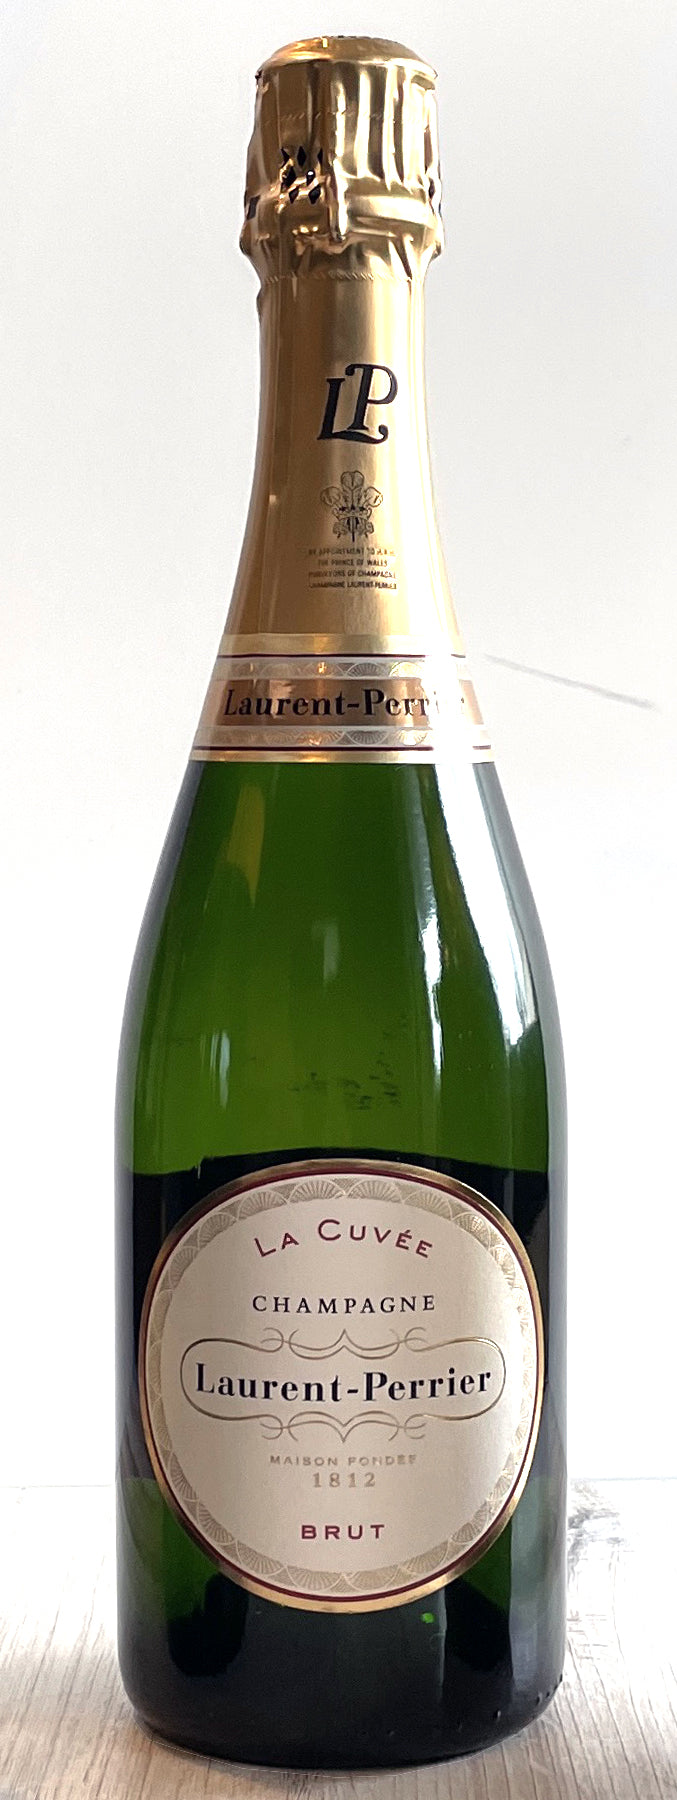 NV Laurent-Perrier La Cuveé Brut Champagne